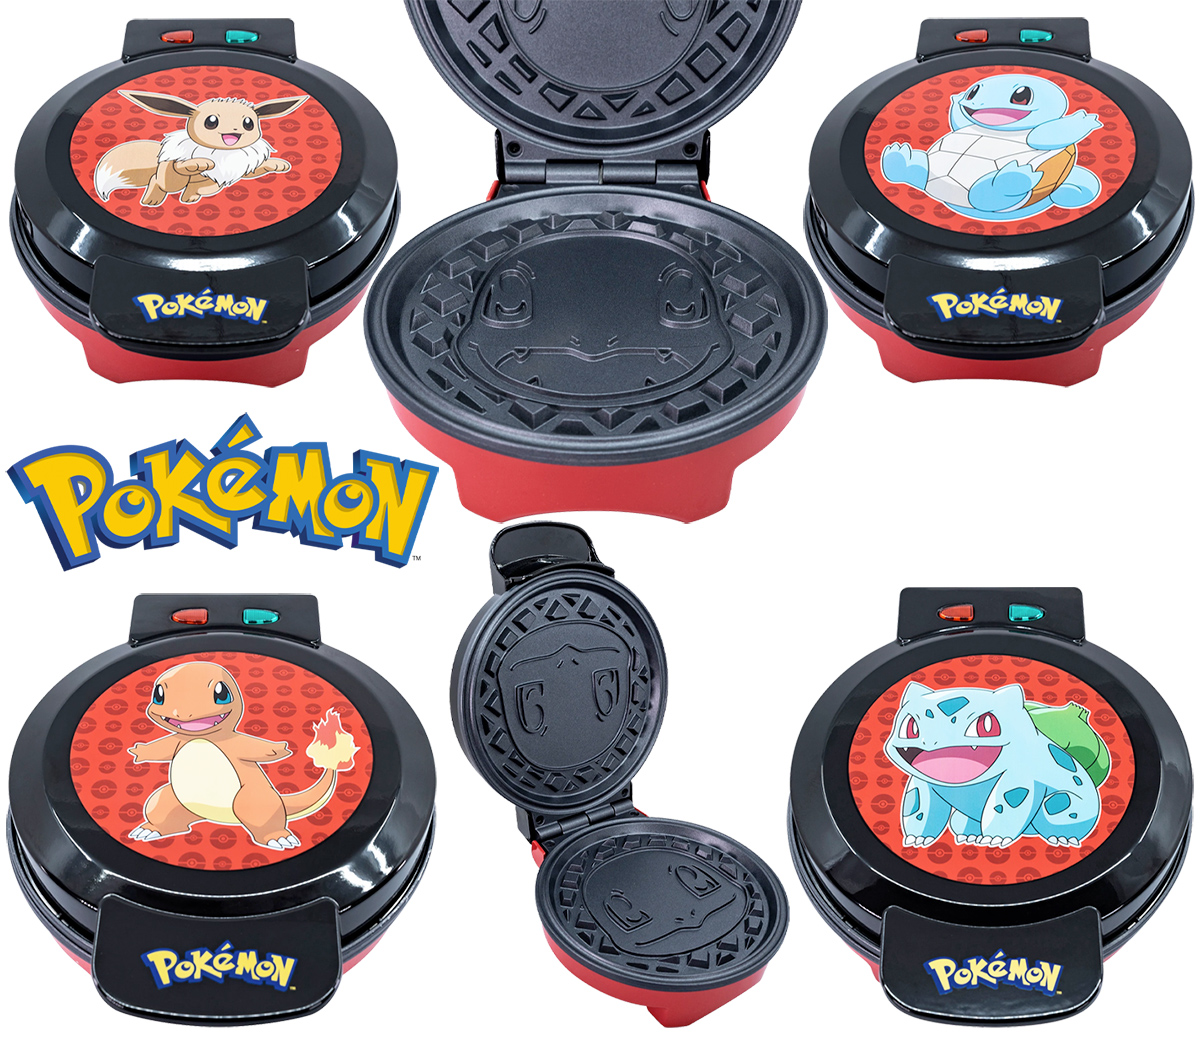 Quatro Máquinas de Waffles Pokémon: Eevee, Squirtle, Charmander e Bulbasaur